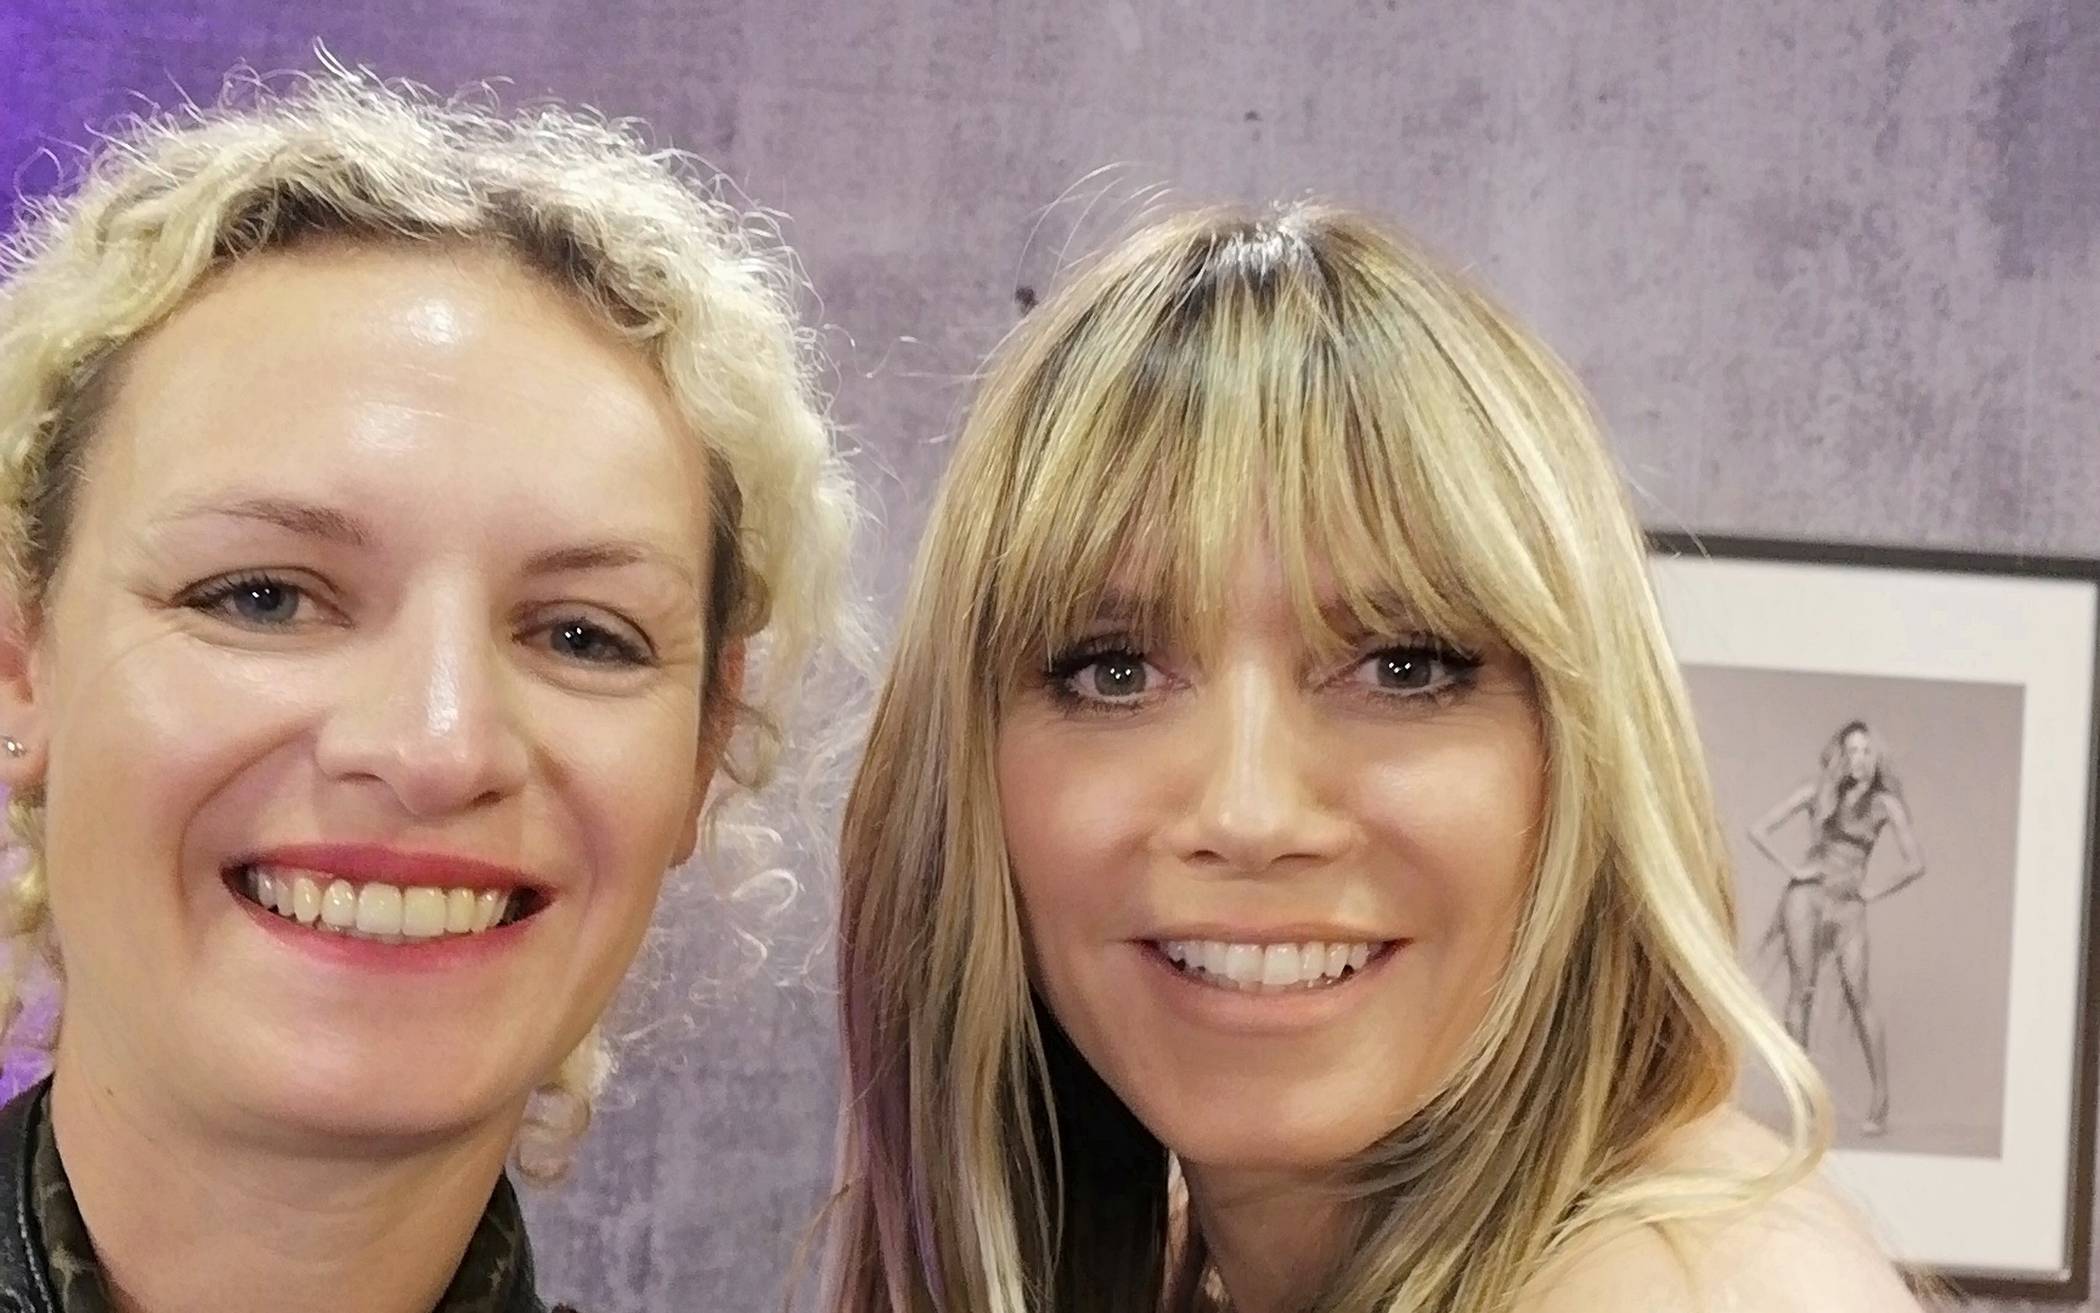 Unsere Redakteurin Julia Schäfer traf Heidi Klum in Düsseldorf vor dem Finale. Das Top-Model zeigte sich nahbar, zog sogar den Highheel (mit roter Sohle... Mode-Fans wissen, was das heißt) vom Fuß, um eine dicke Blase zu zeigen. <![CDATA[]]>